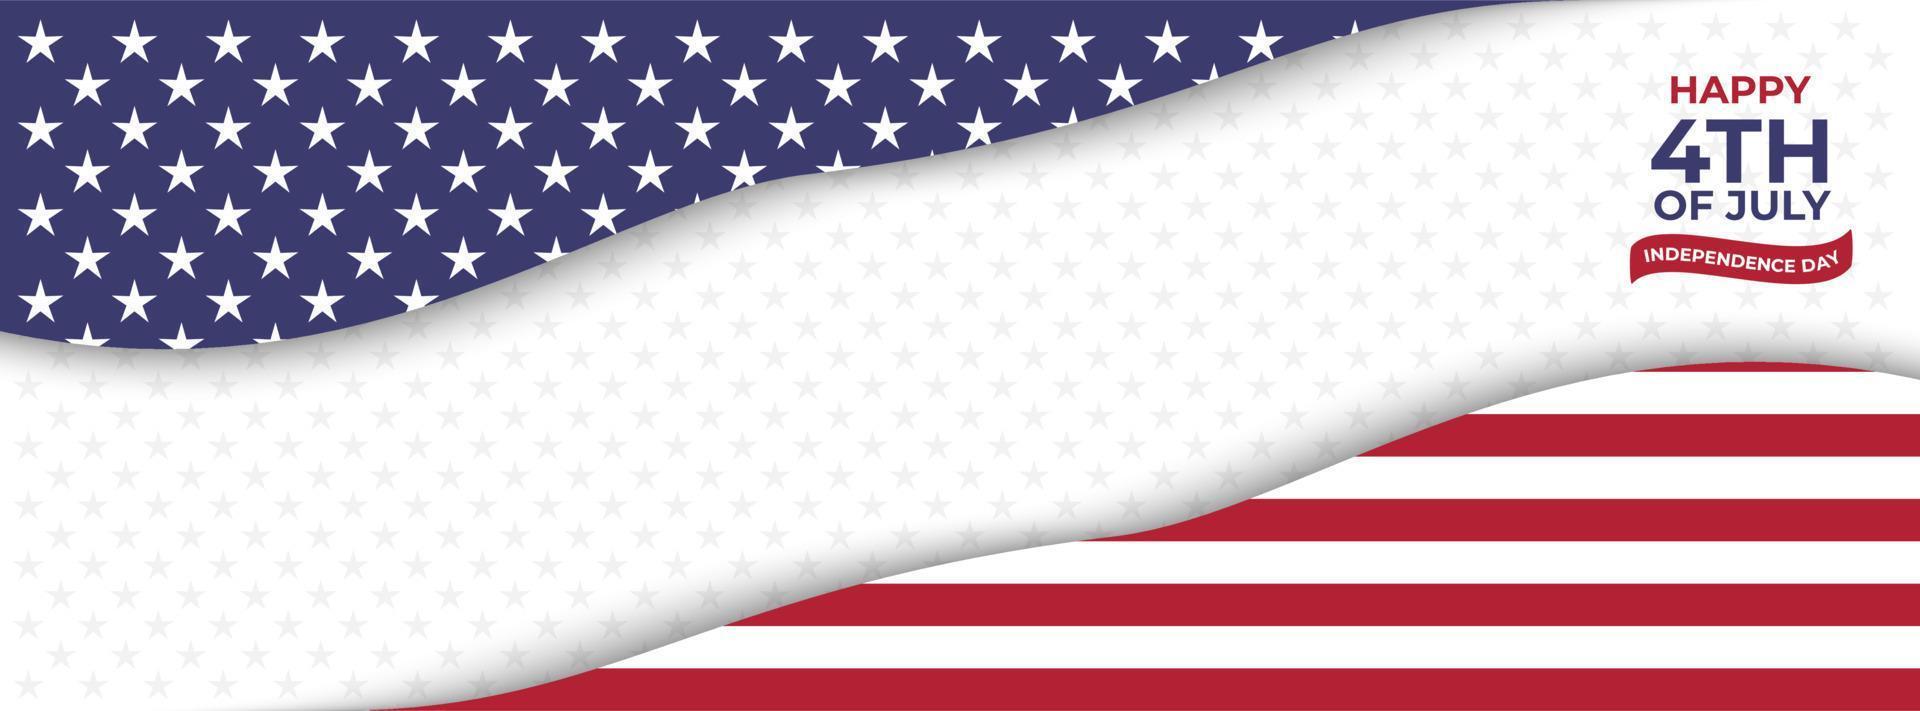 modello di sfondo del paesaggio per la bandiera del giorno dell'indipendenza degli Stati Uniti vettore